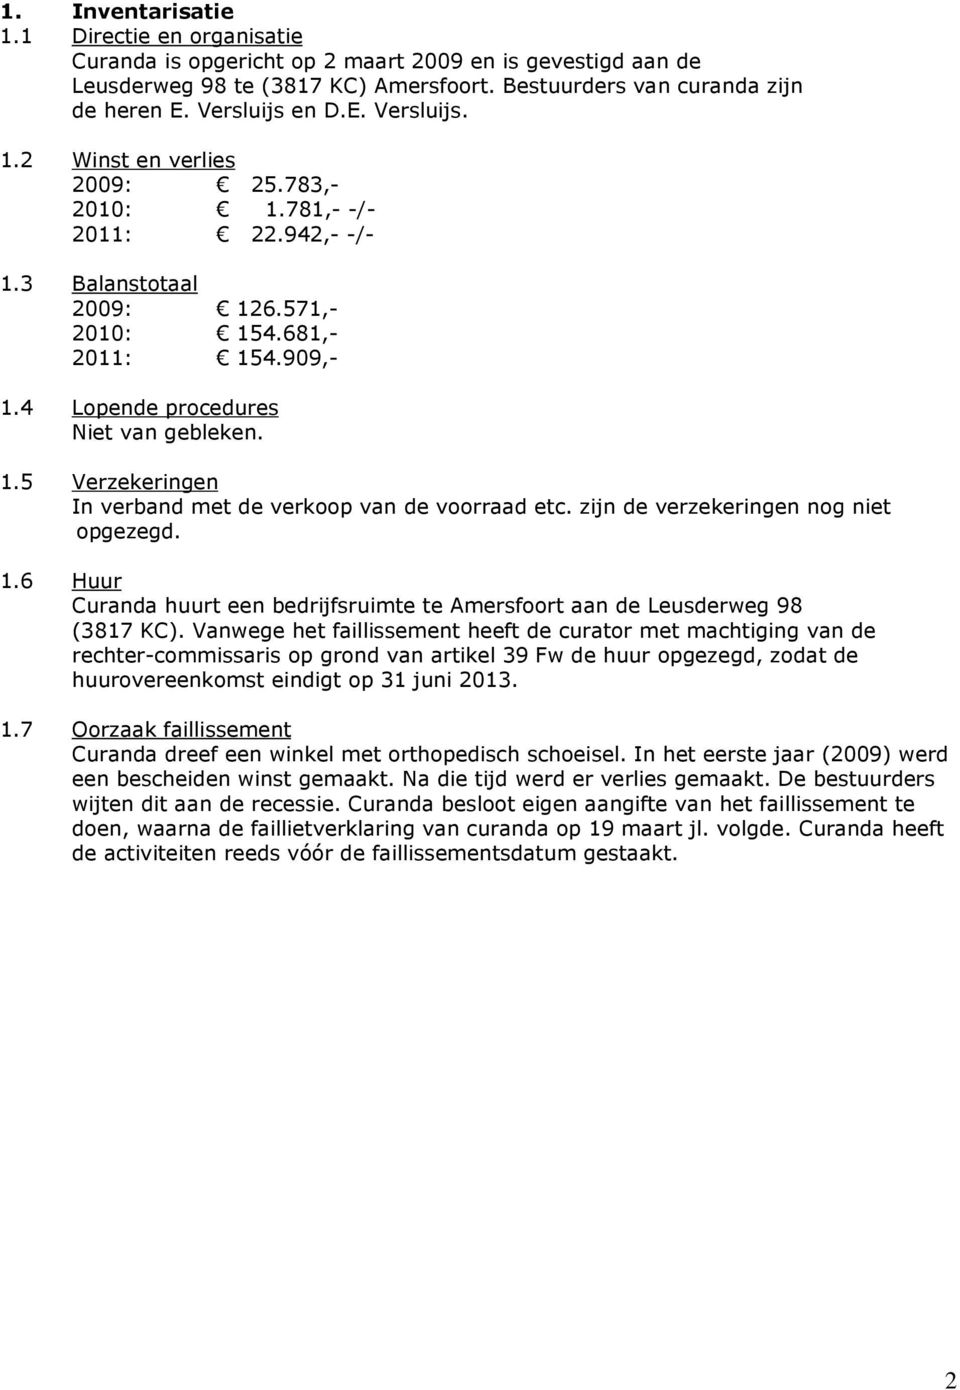 4 Lopende procedures Niet van gebleken. 1.5 Verzekeringen In verband met de verkoop van de voorraad etc. zijn de verzekeringen nog niet opgezegd. 1.6 Huur Curanda huurt een bedrijfsruimte te Amersfoort aan de Leusderweg 98 (3817 KC).